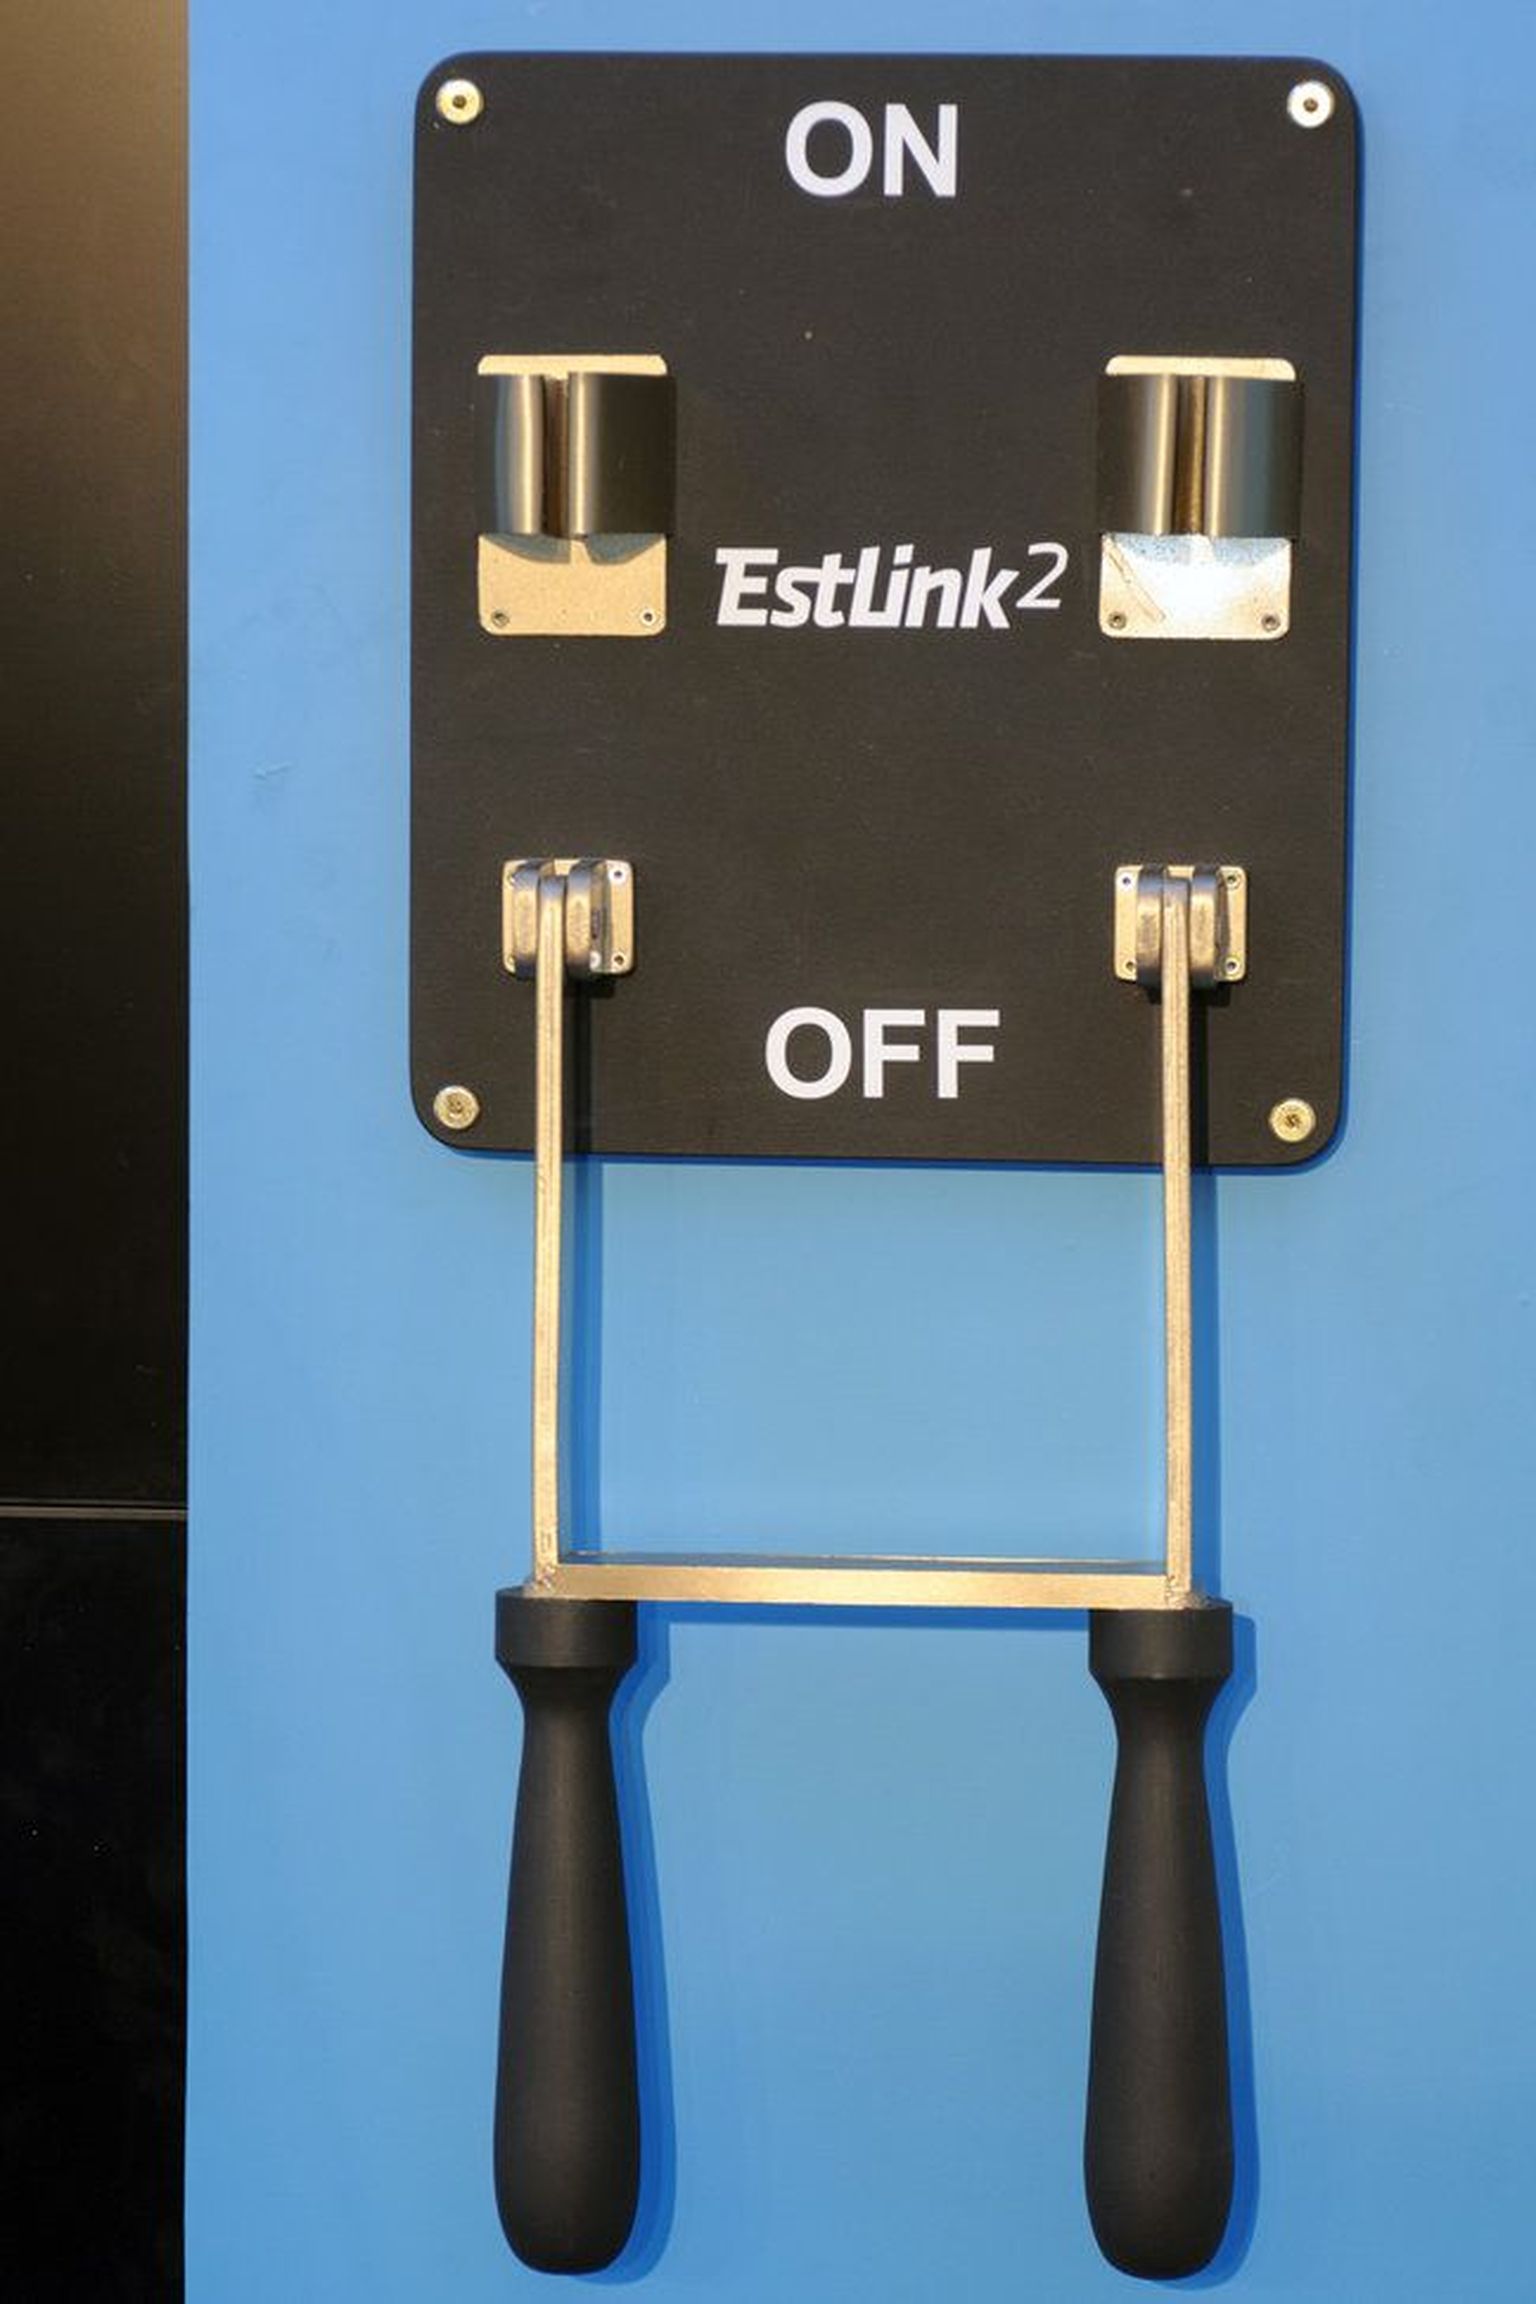 Департамент конкуренции начал проверку в отношении фирмы Elering в связи с нарушением работы электрокабелей между Эстонией и Финляндией.